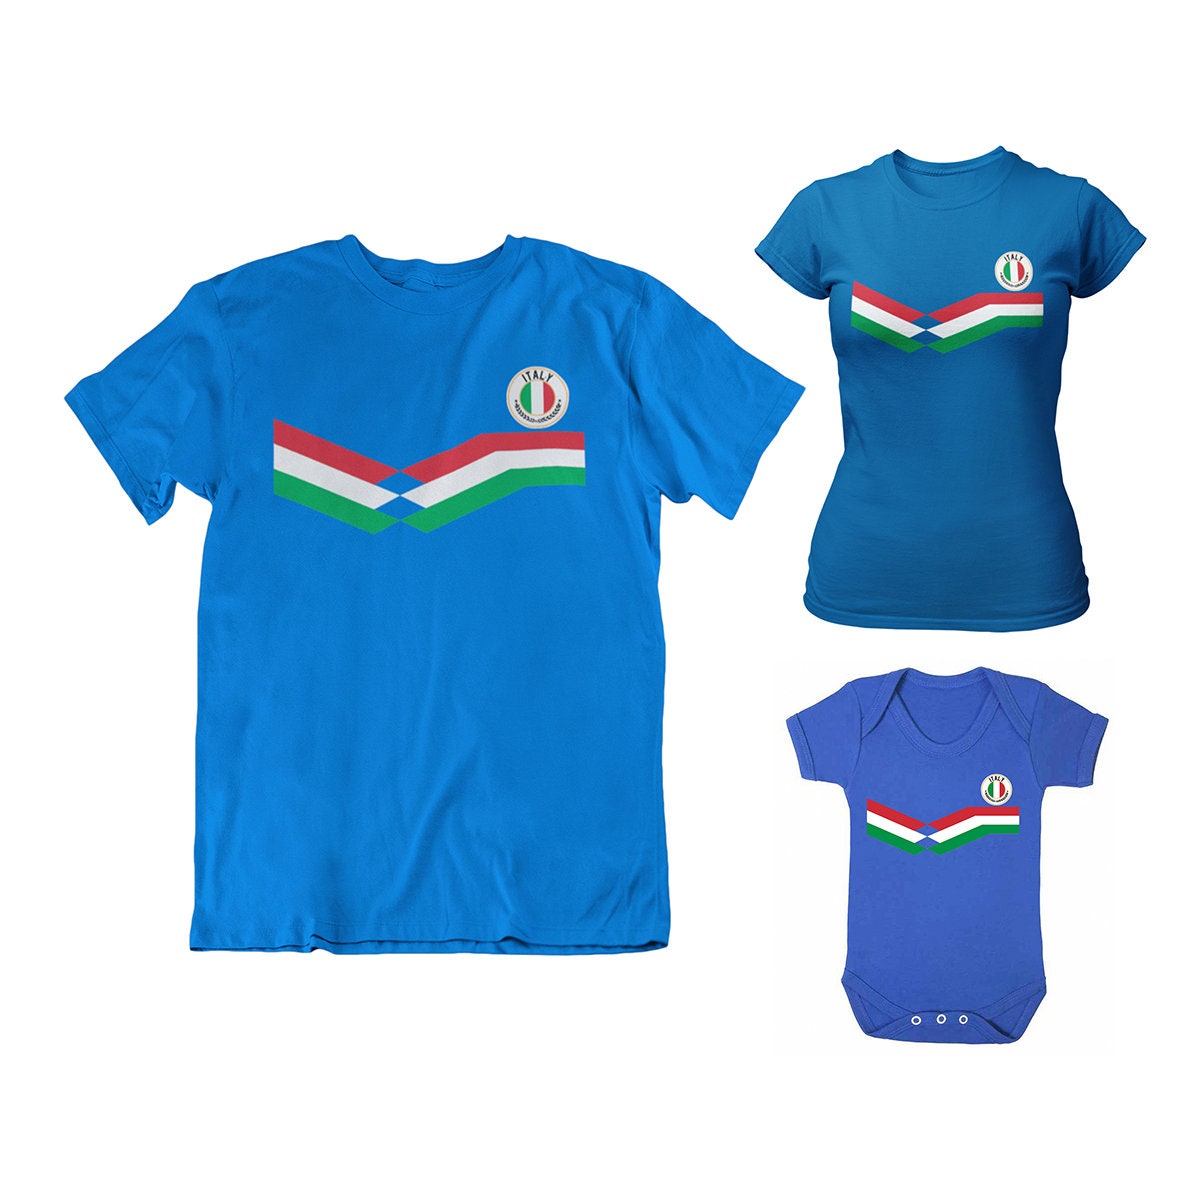 BABY SUECIA Camiseta de fútbol, Niños Niñas Bebés Unisex Fit Kit Strip  Regalo sostenible Algodón orgánico -  México